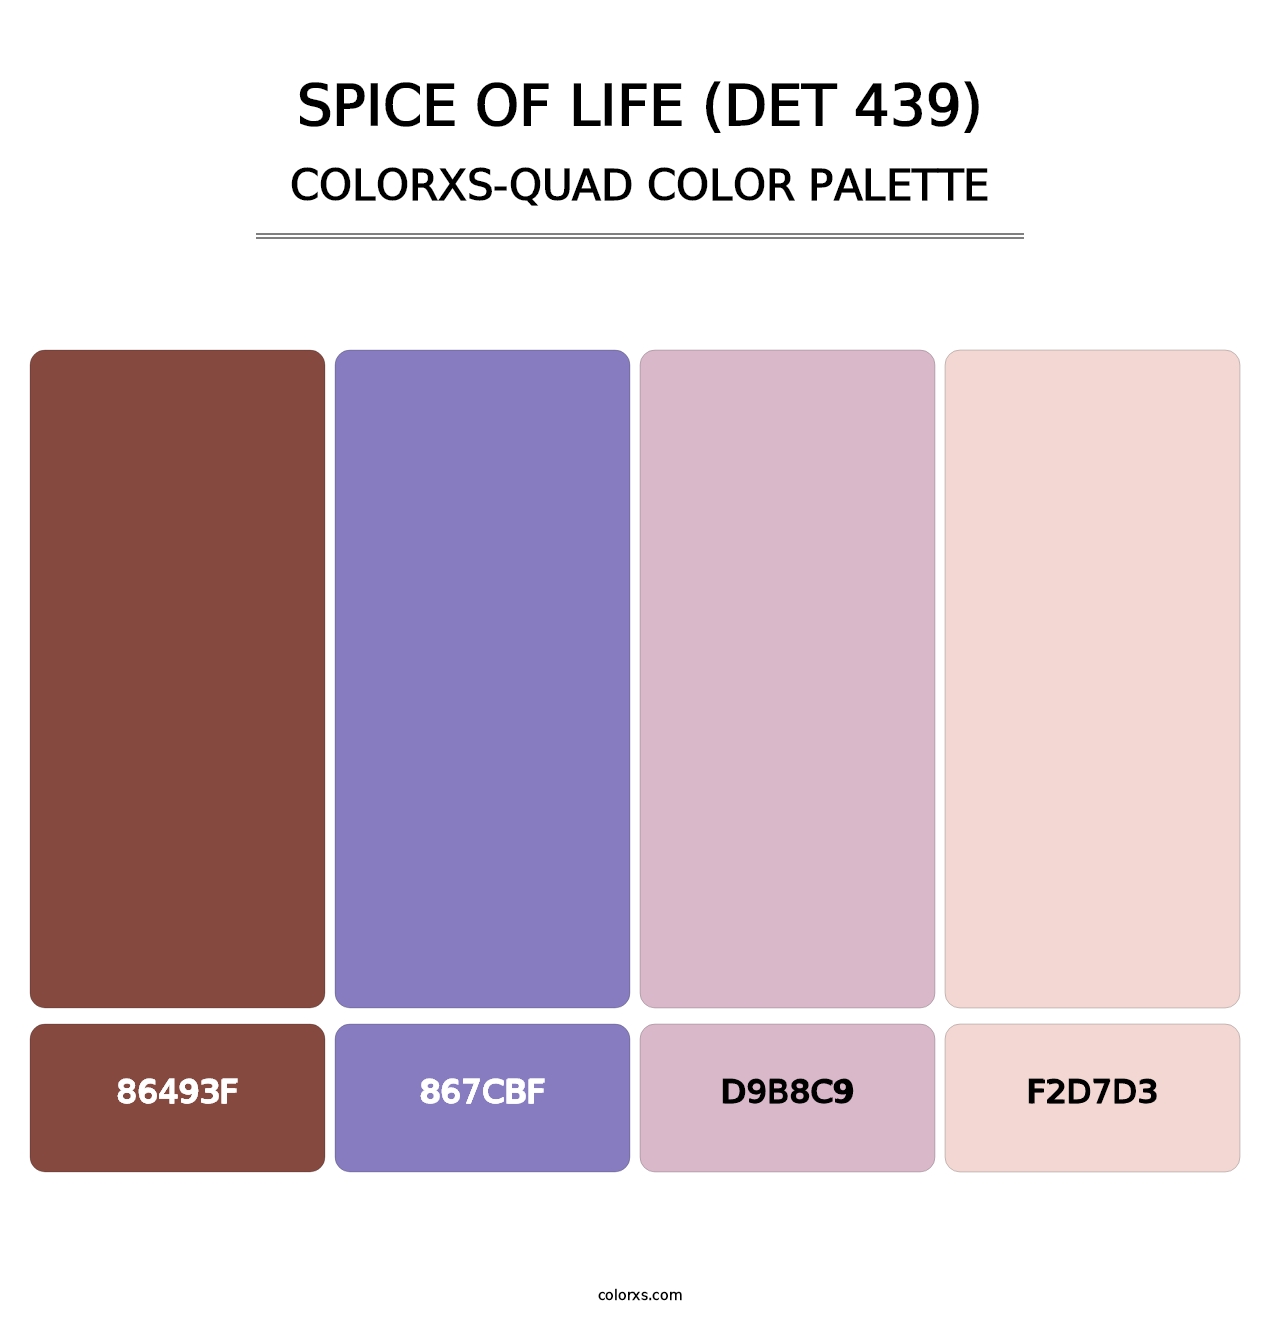 Spice of Life (DET 439) - Colorxs Quad Palette